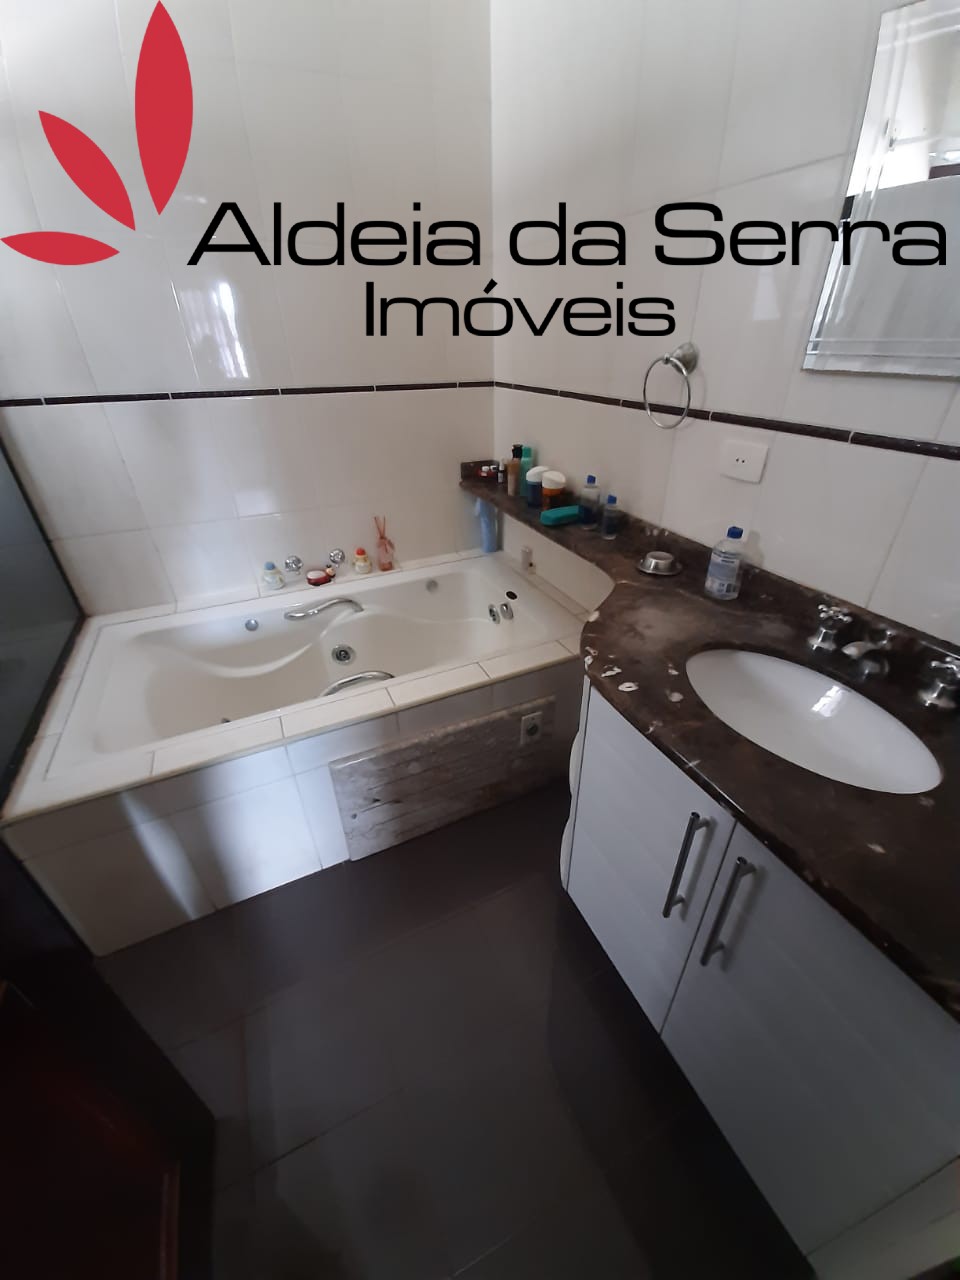 /admin/imoveis/fotos/IMG-20211105-WA0022 (1).jpg Aldeia da Serra Imoveis